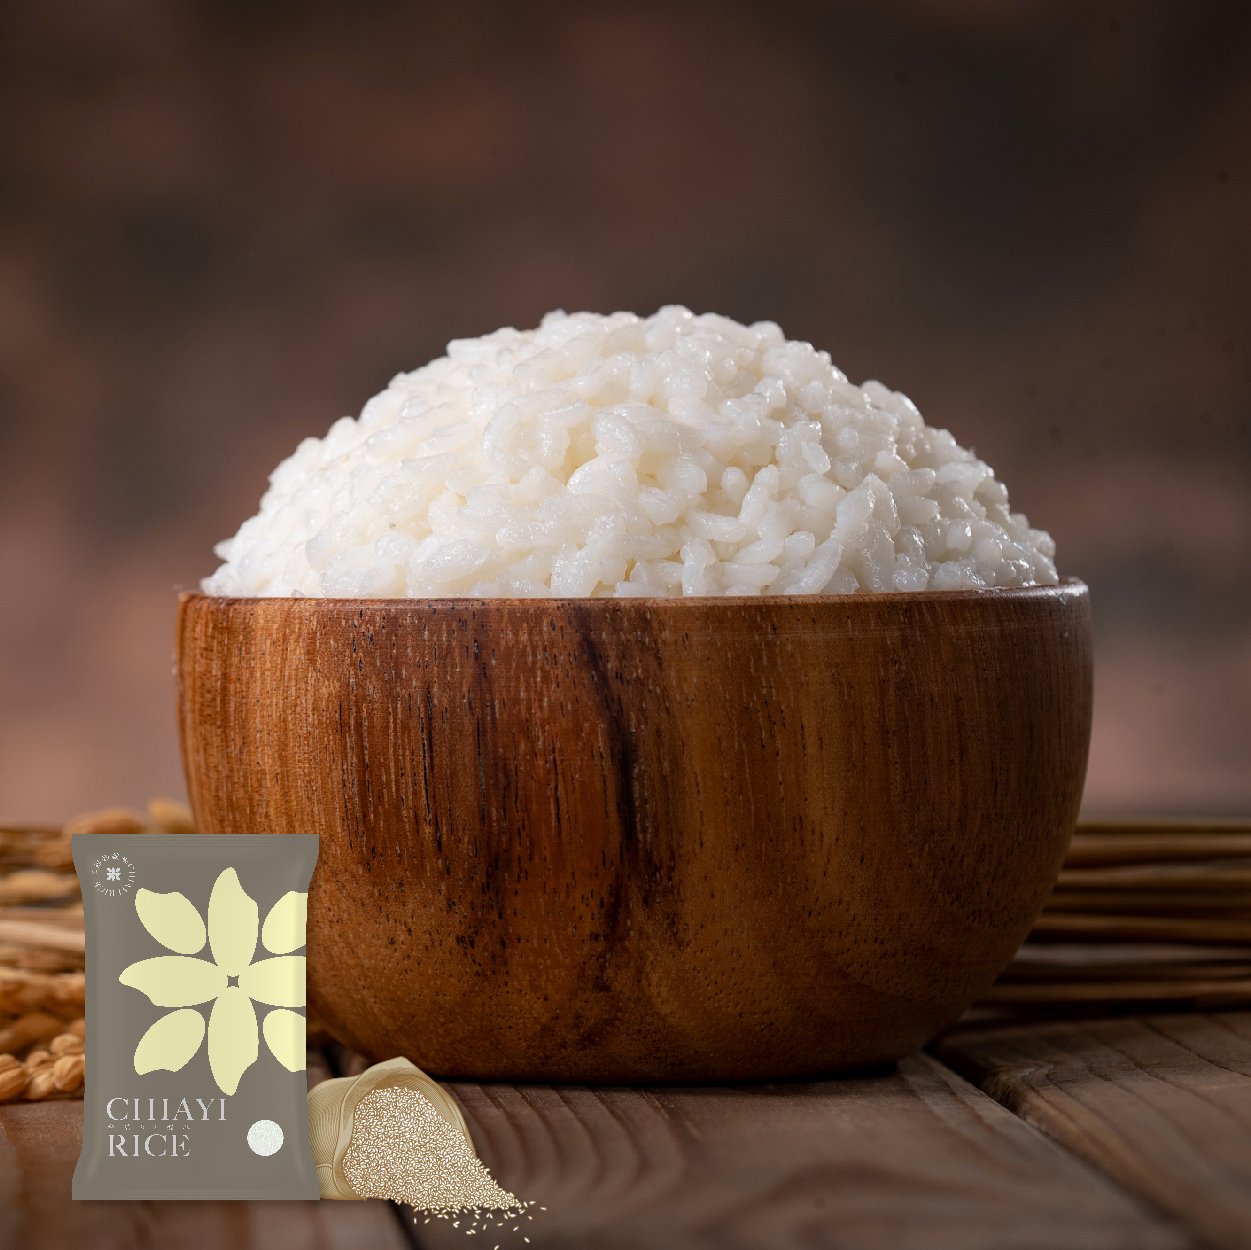 嘉義市 幸福嘉義米 台農82號美味米 咀嚼完整米粒的幸福